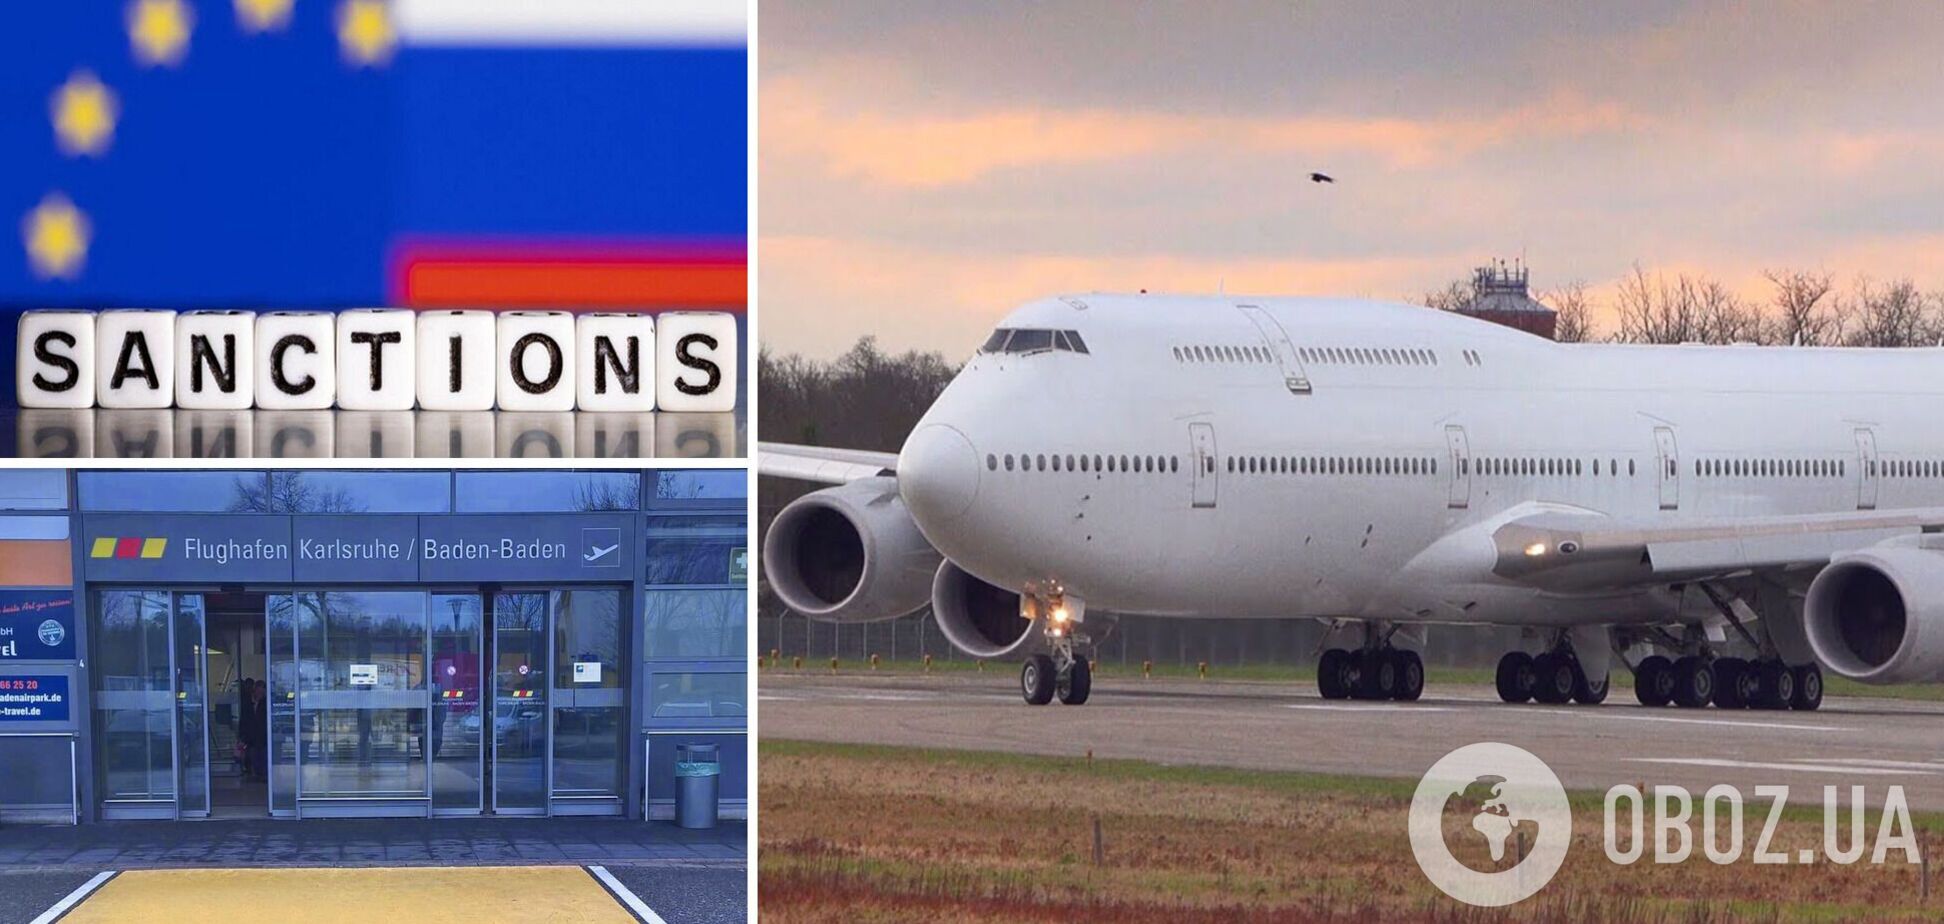 Германия из-за санкций заблокировала десять российских самолетов